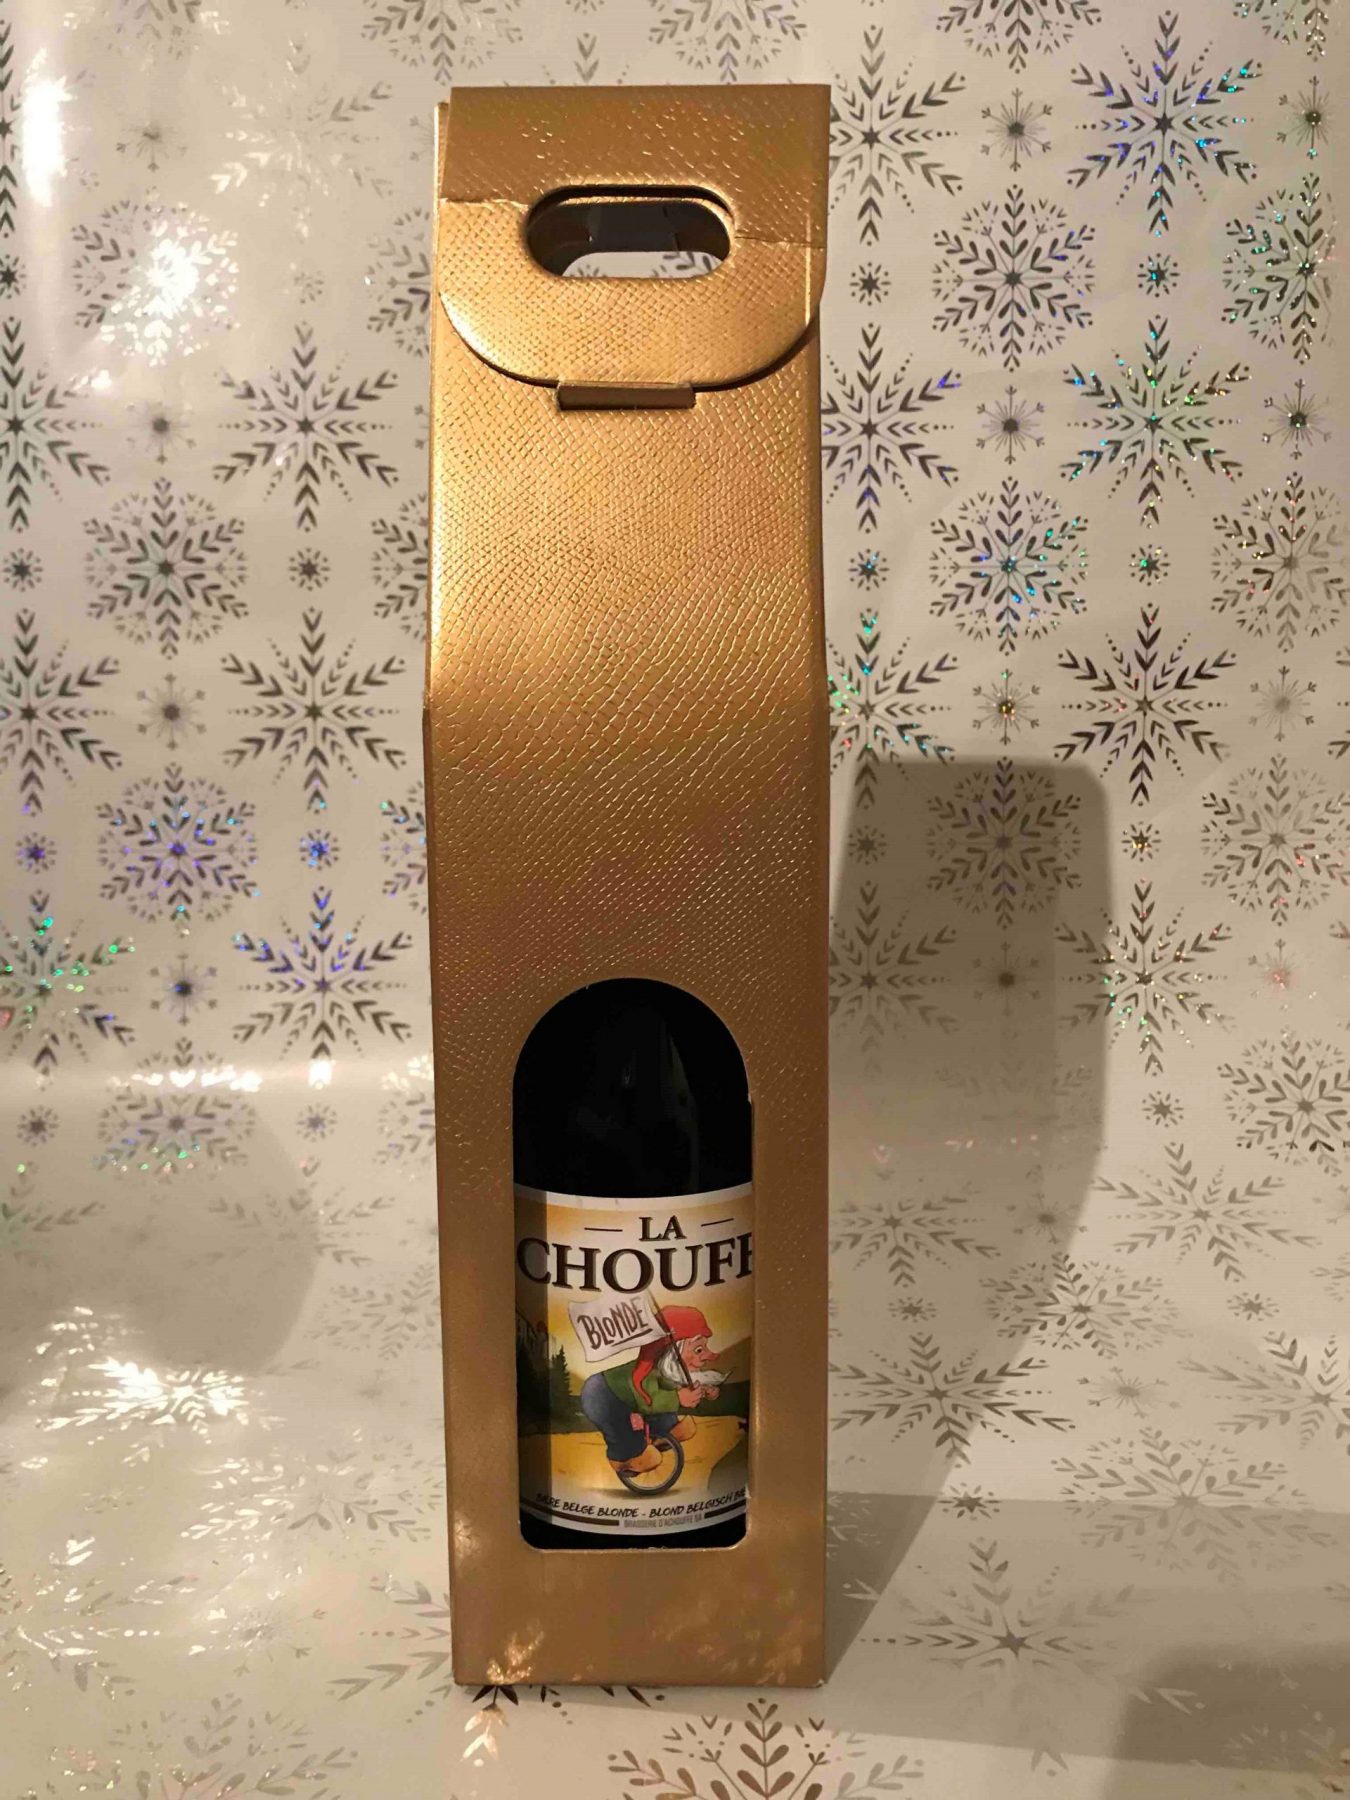 La Chouffe, 750ml/bottle